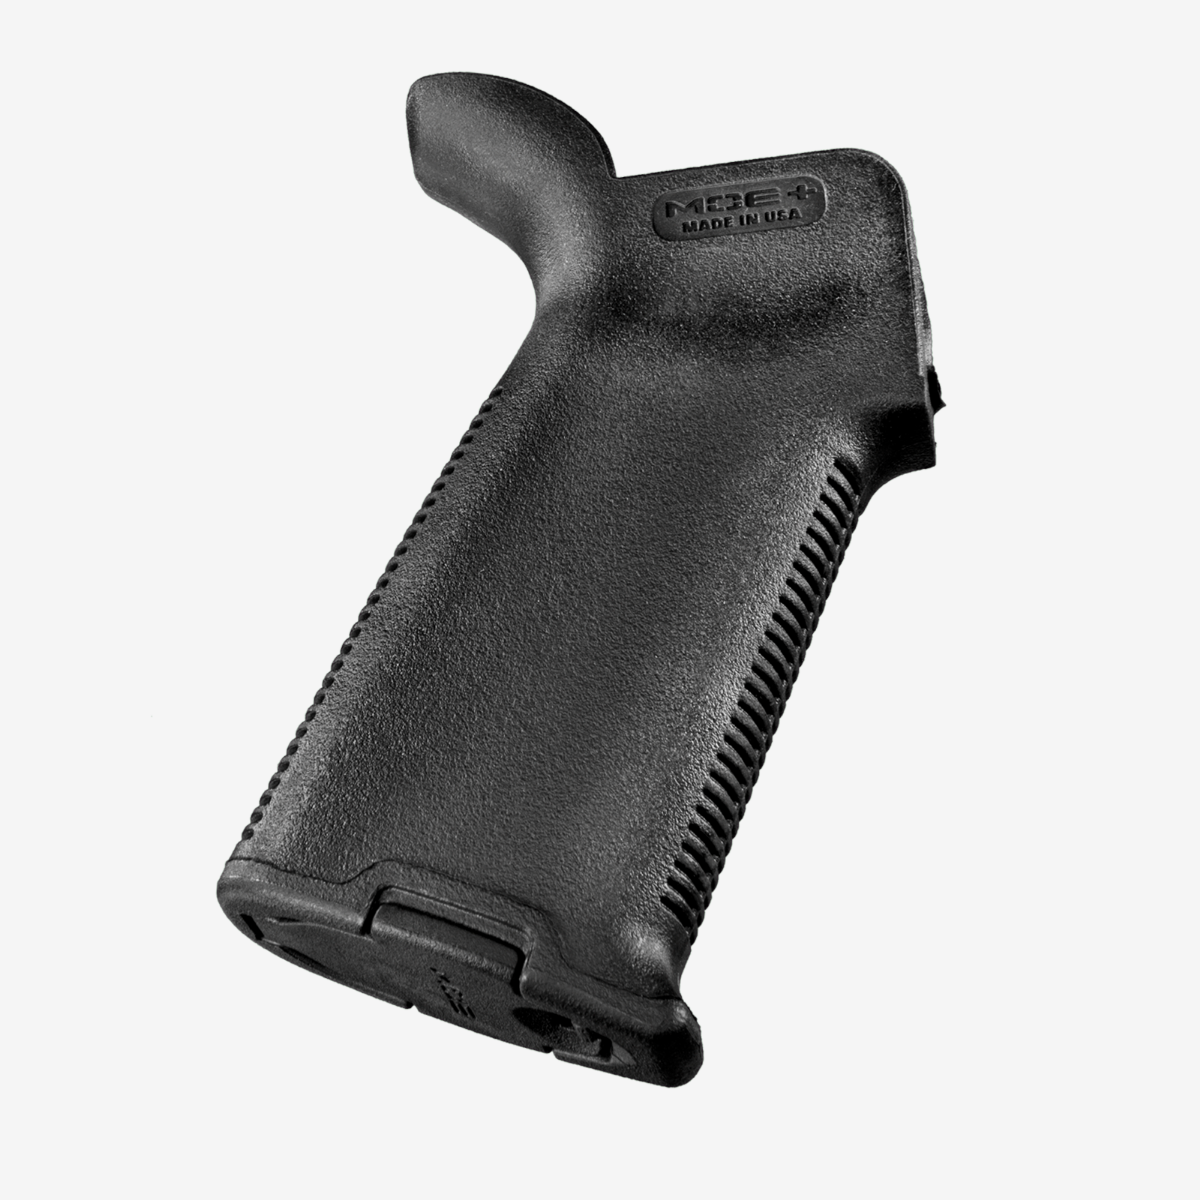 Рукоять пистолетная прорезиненная Magpul MOE+ Grip для AR15/M4 (MAG416)